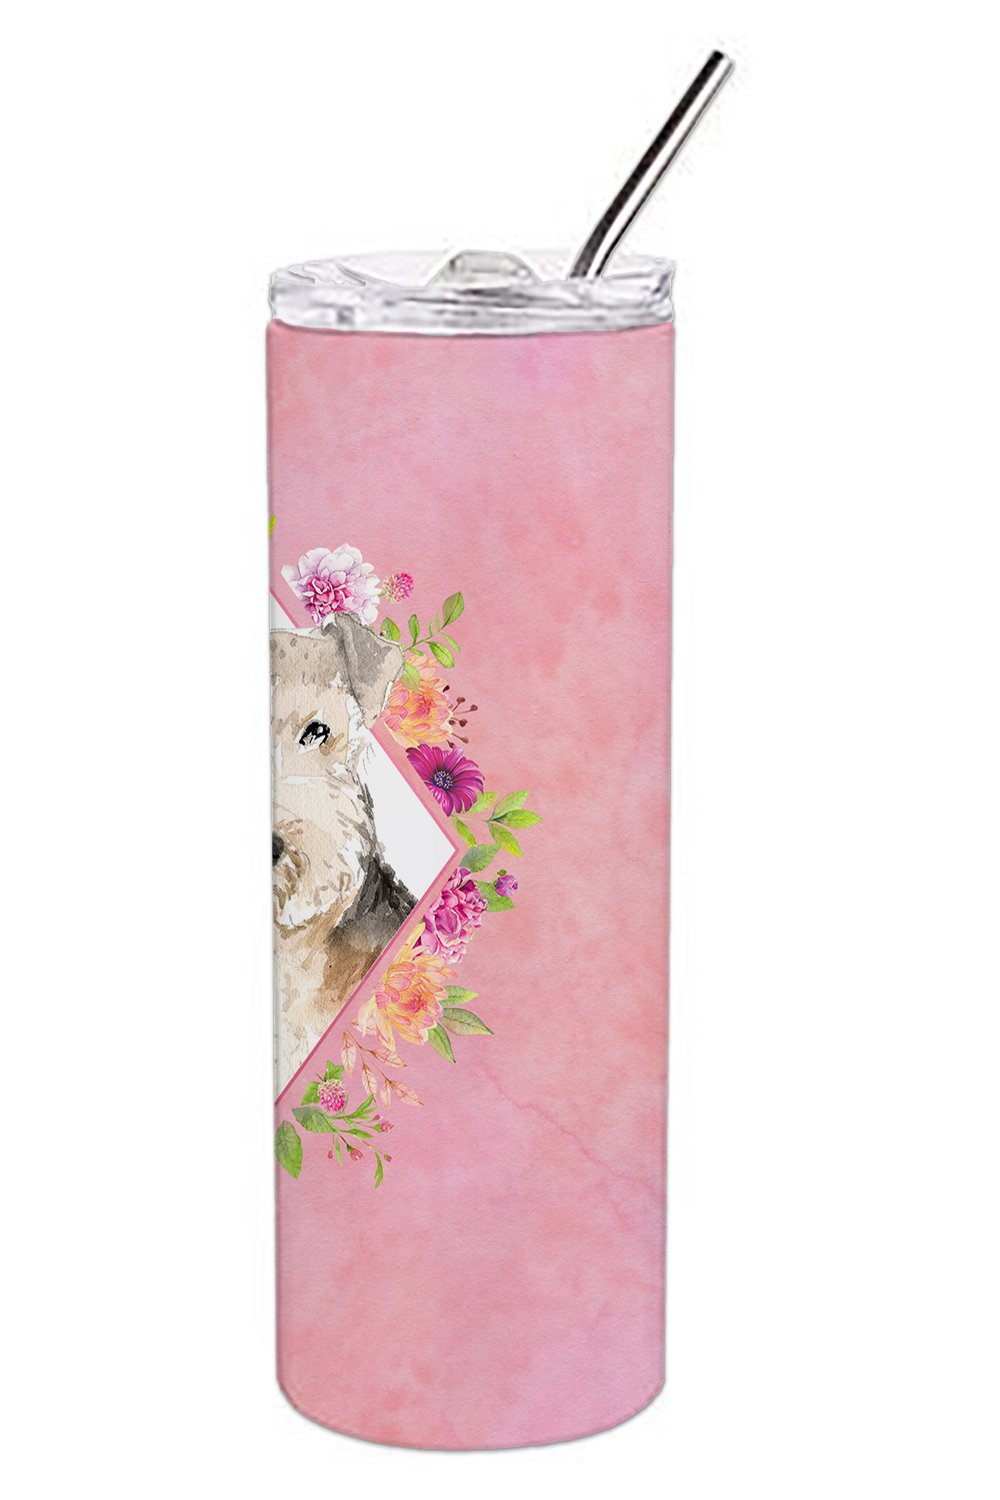 Lakeland Terrier Pink Flowers Double Walled Stainless Steel 20 oz Skinny Tumbler CK4226TBL20 by Caroline's Treasures